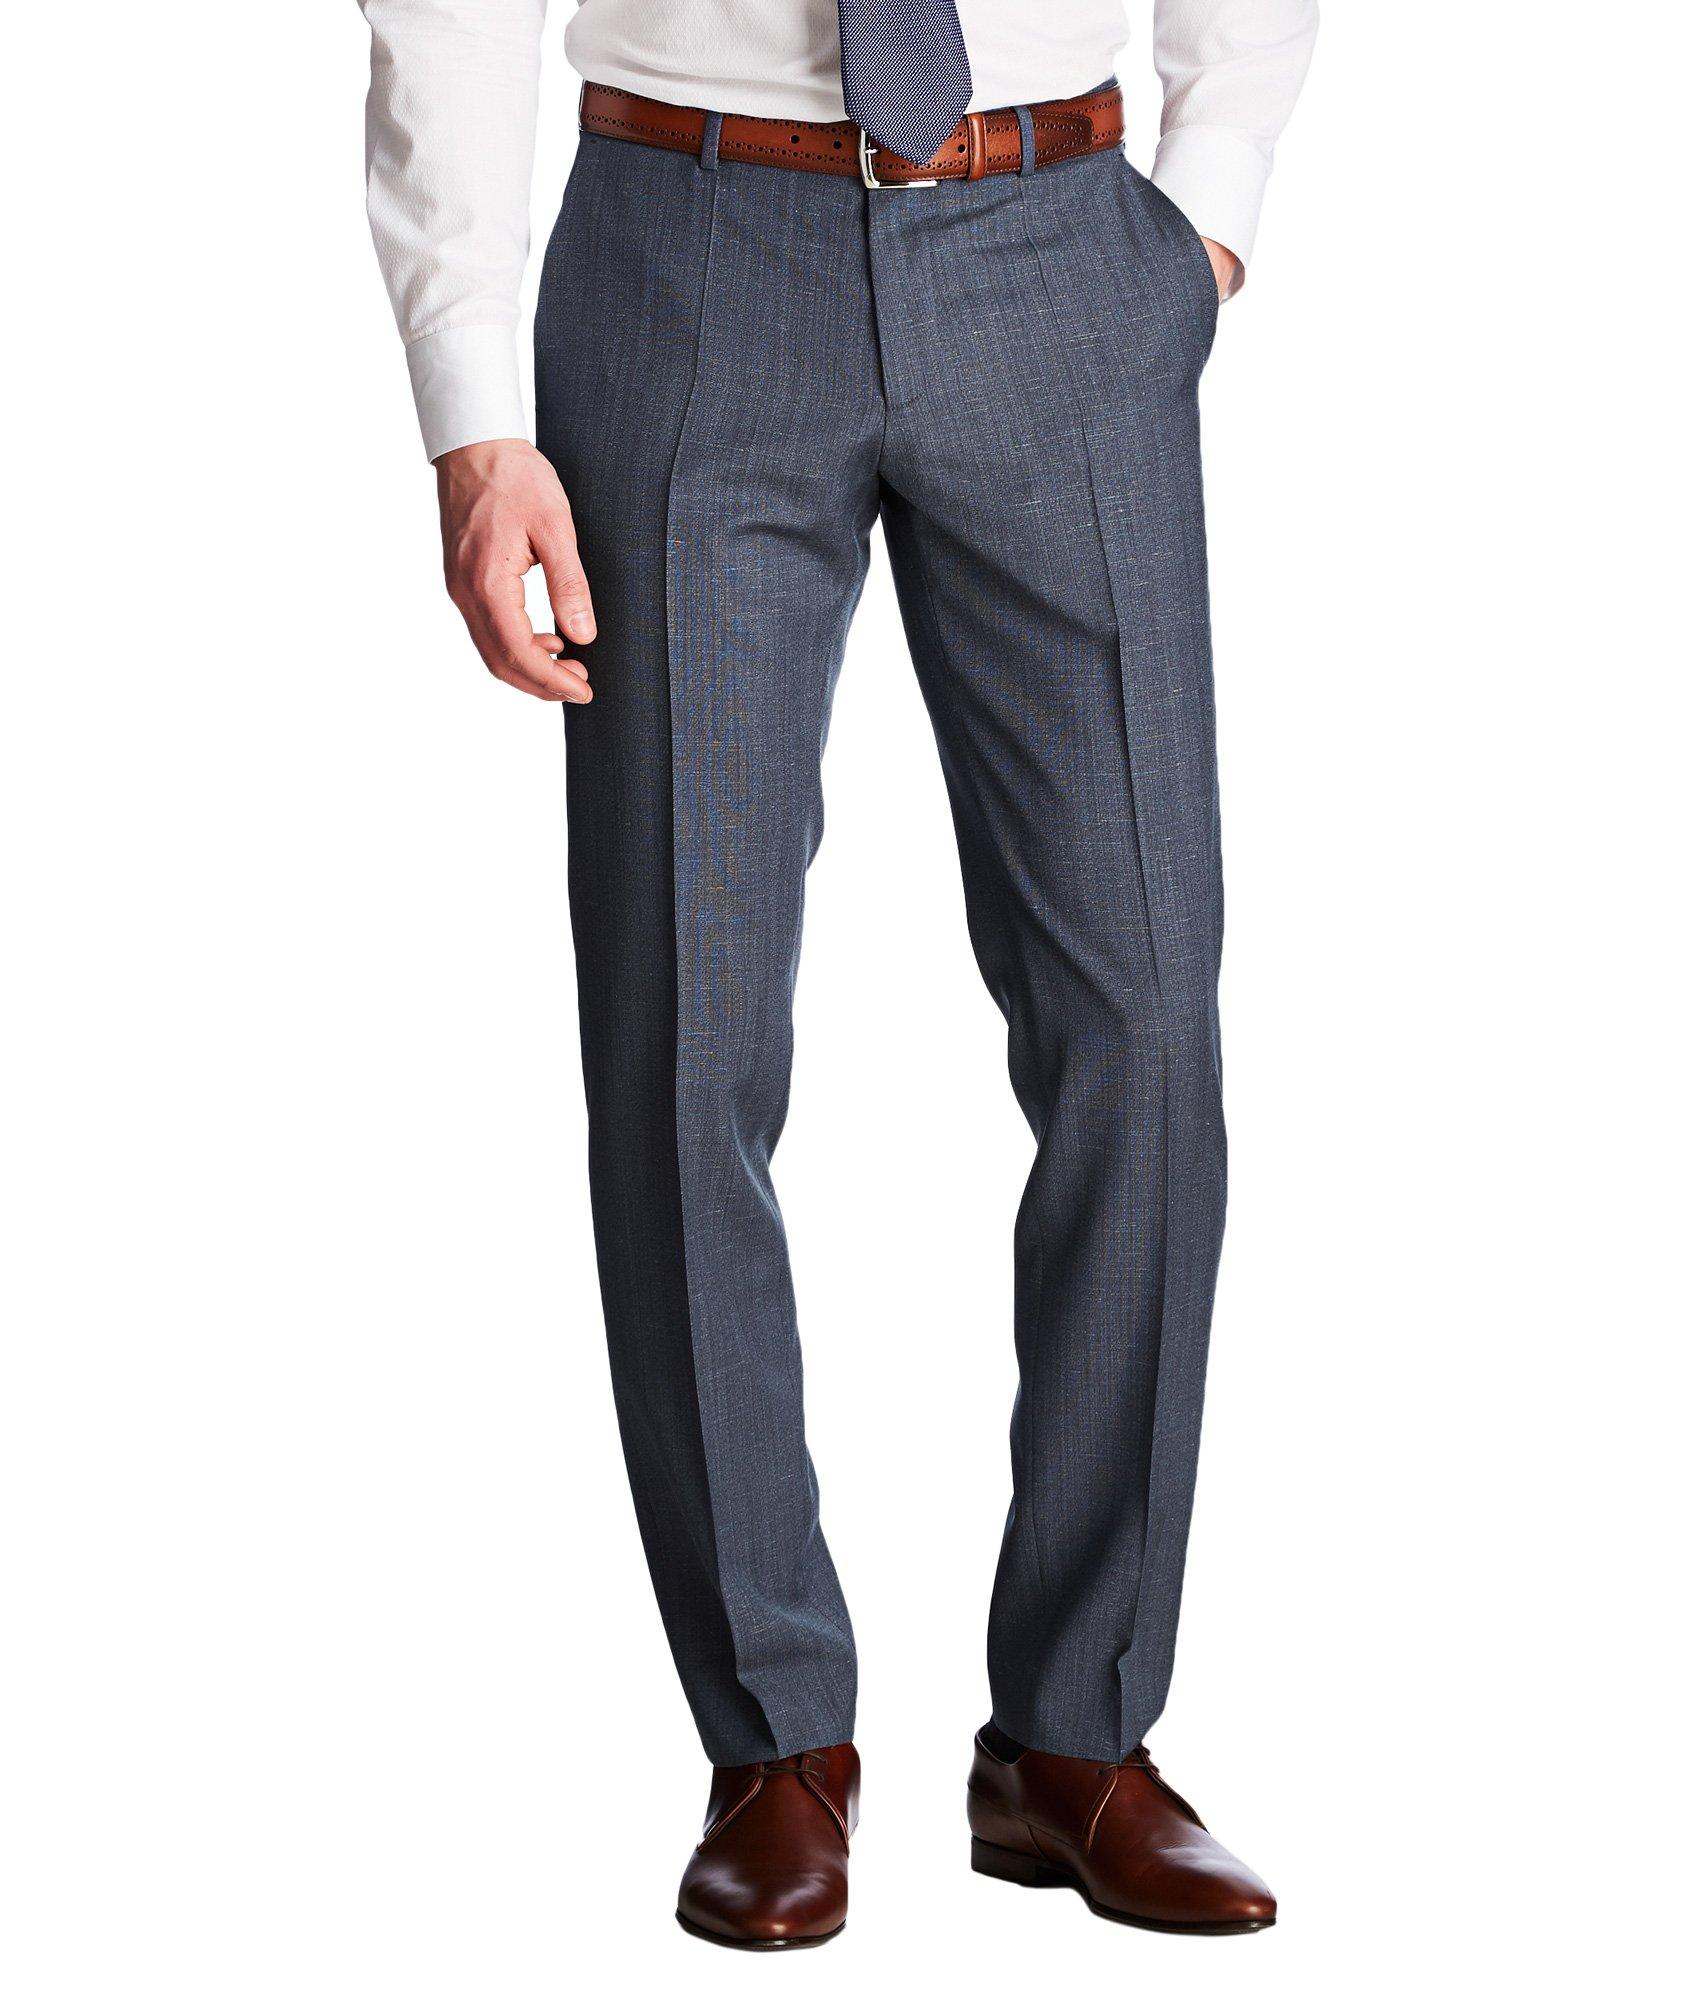 Pantalon habillé de coupe amincie, modèle Genesis image 0